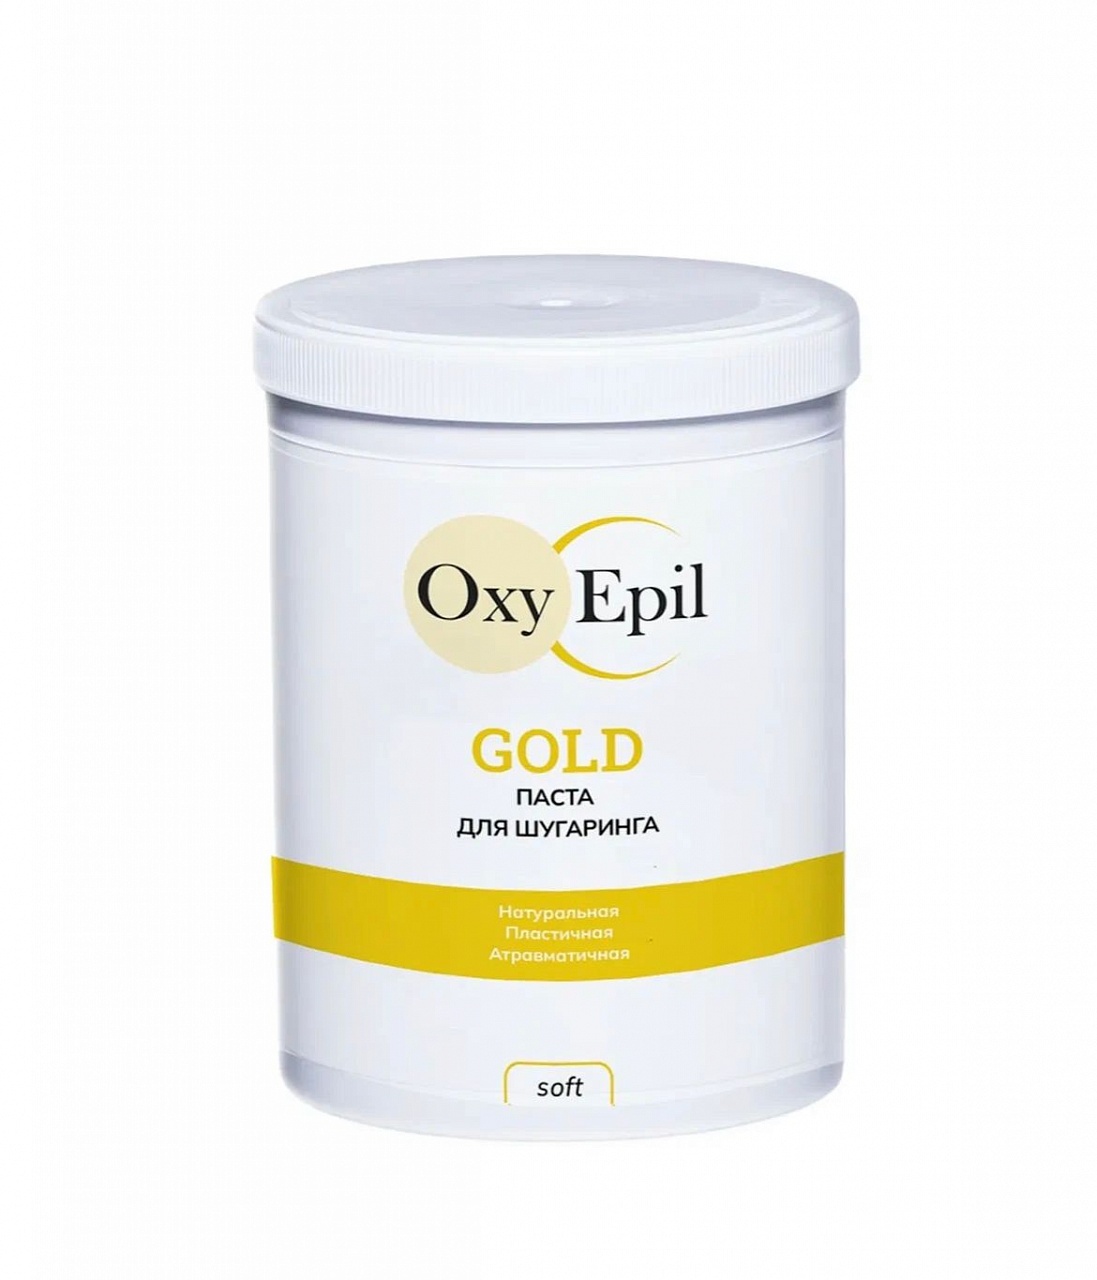 Паста для шугаринга OxyEpil GOLD - Soft 1500 гр паста для шугаринга oxyepil gold ultra soft 1500 г